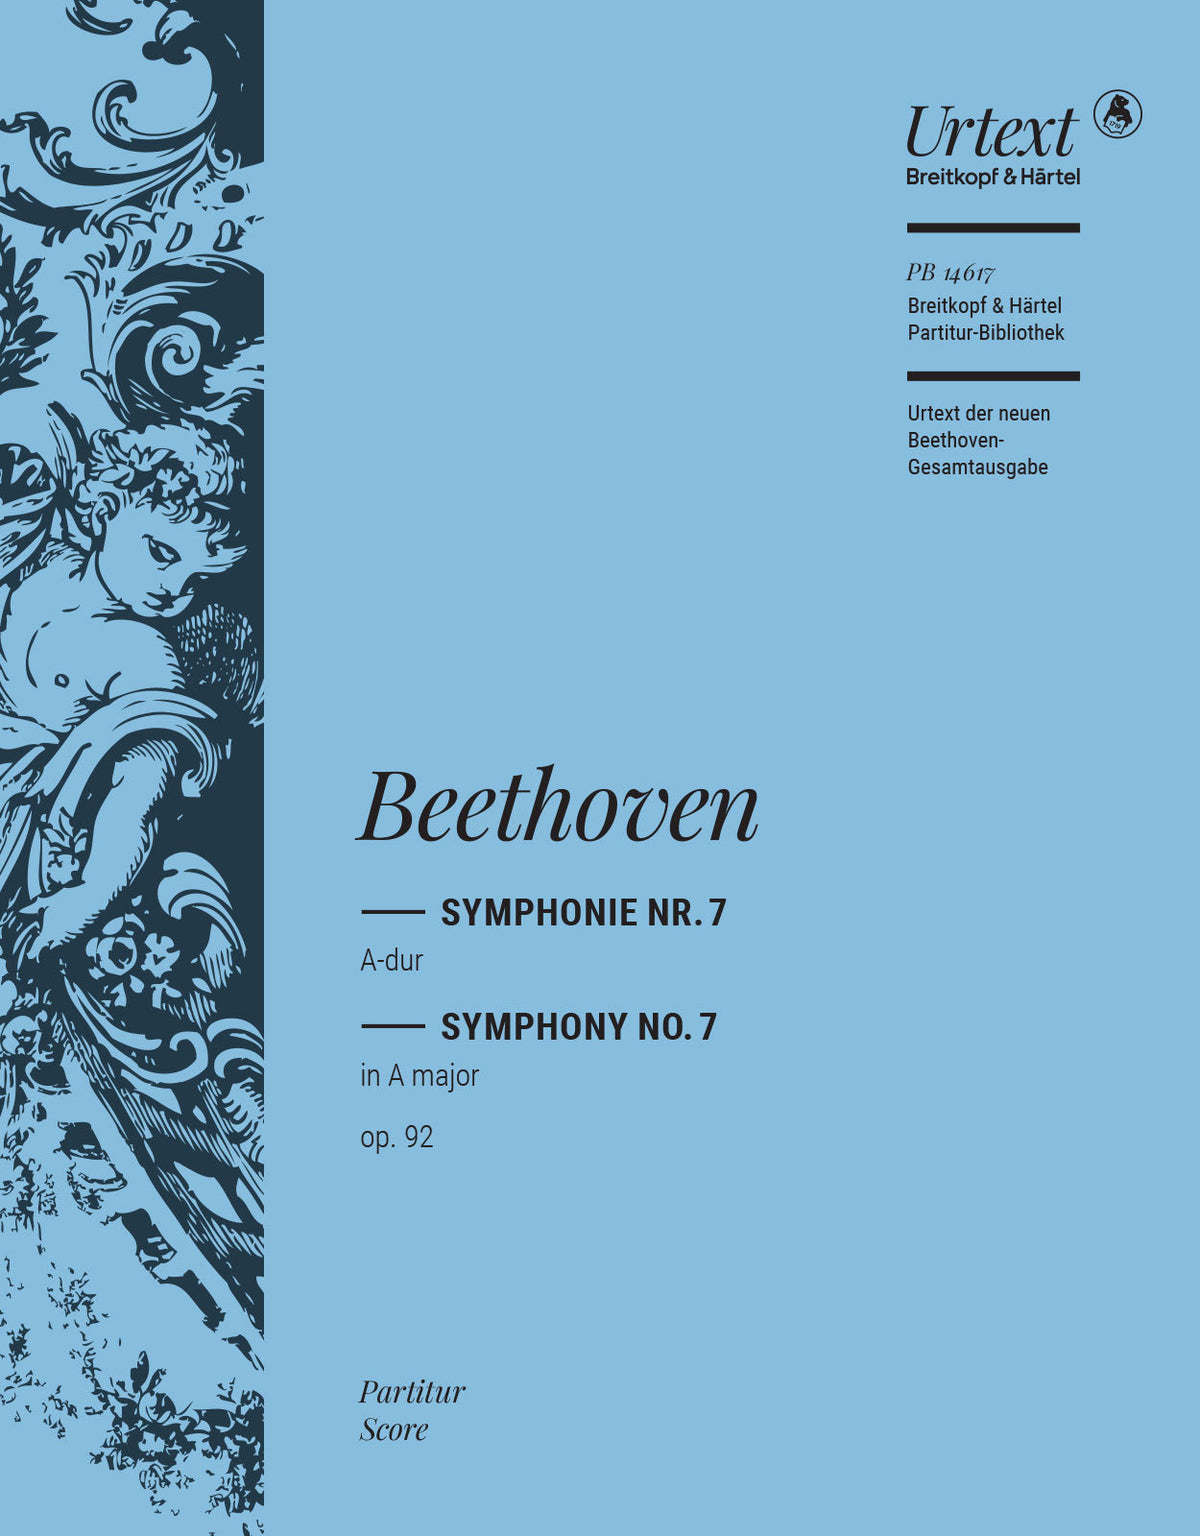 Beethoven Symphony No. 7 in A major Op. 92